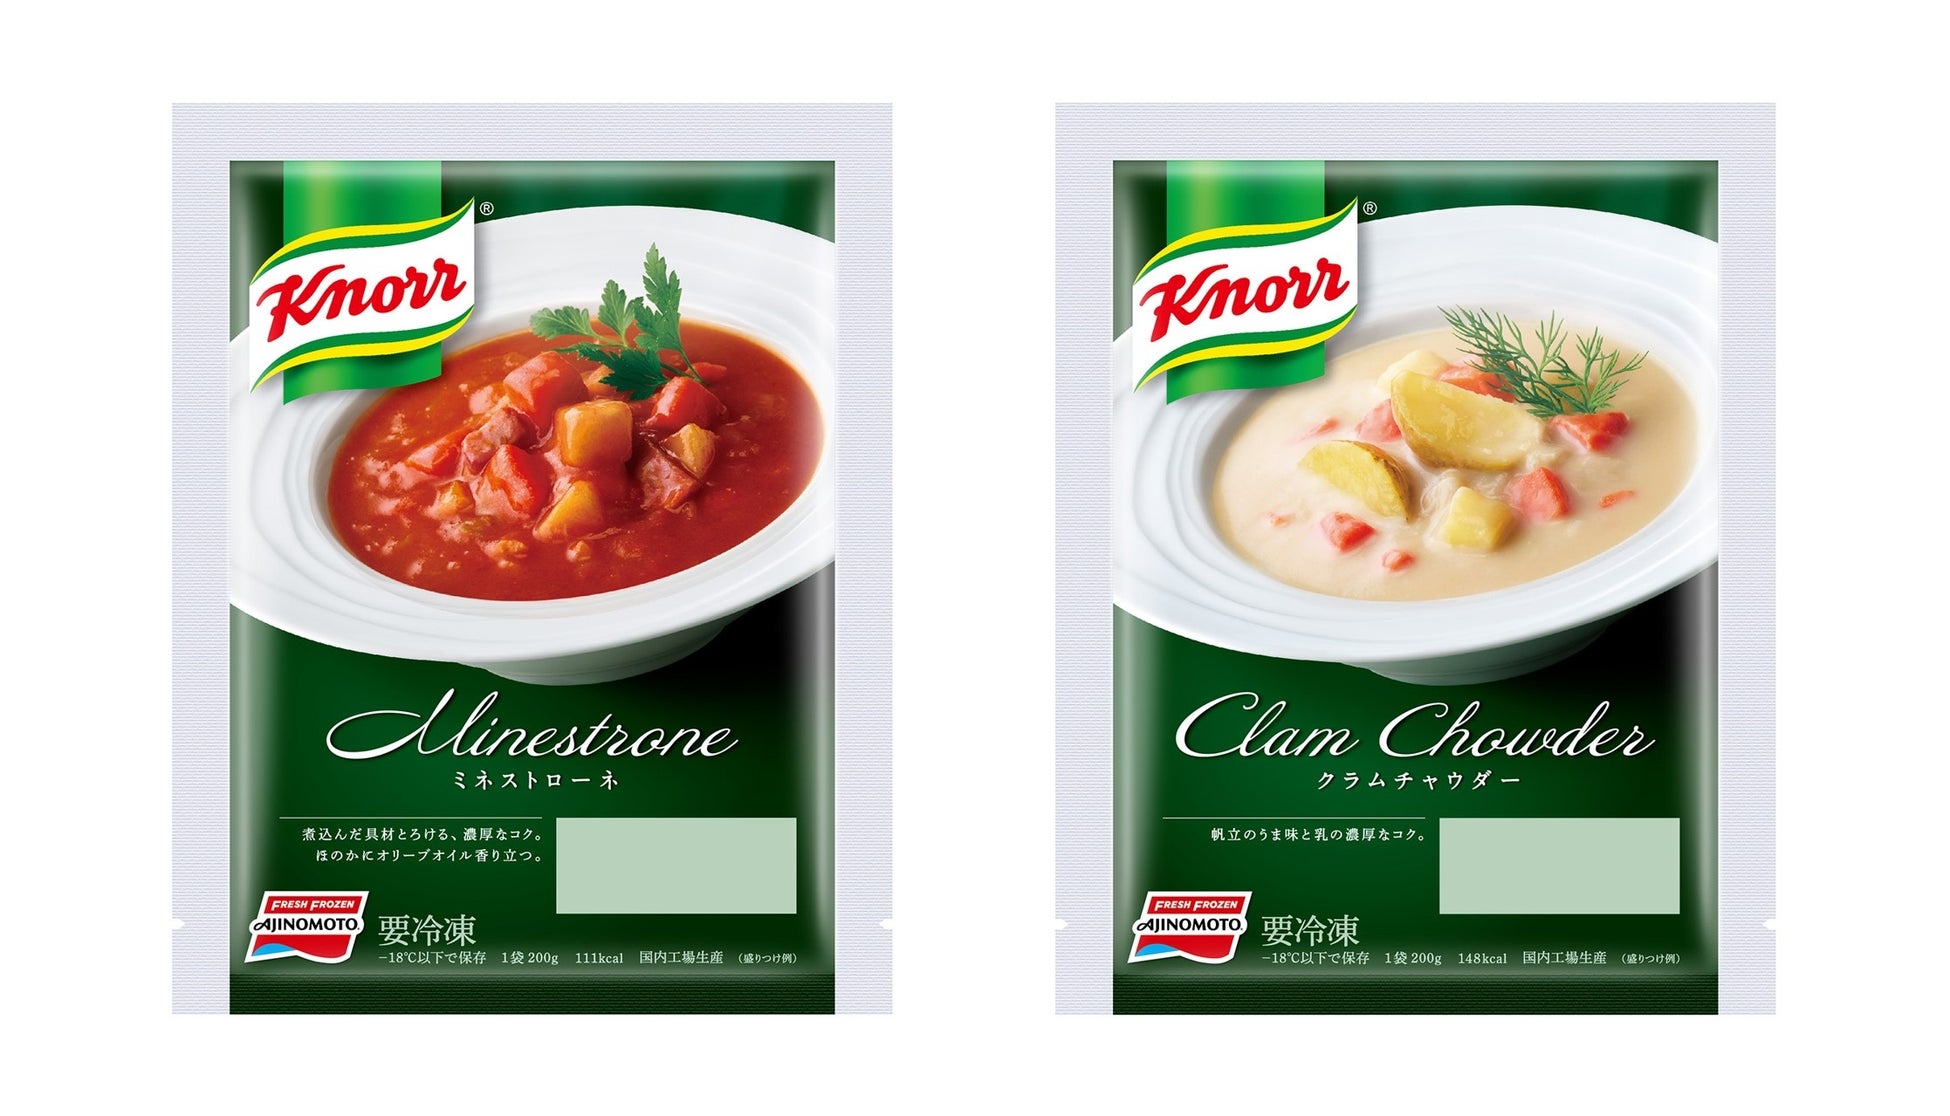 北海道産野菜がたっぷり入ったスープを電子レンジで簡単に！「クノール®」の“具材リッチ”なスープが冷凍食品から新発売！「クノール®」ミネストローネ・「クノール®」クラムチャウダー